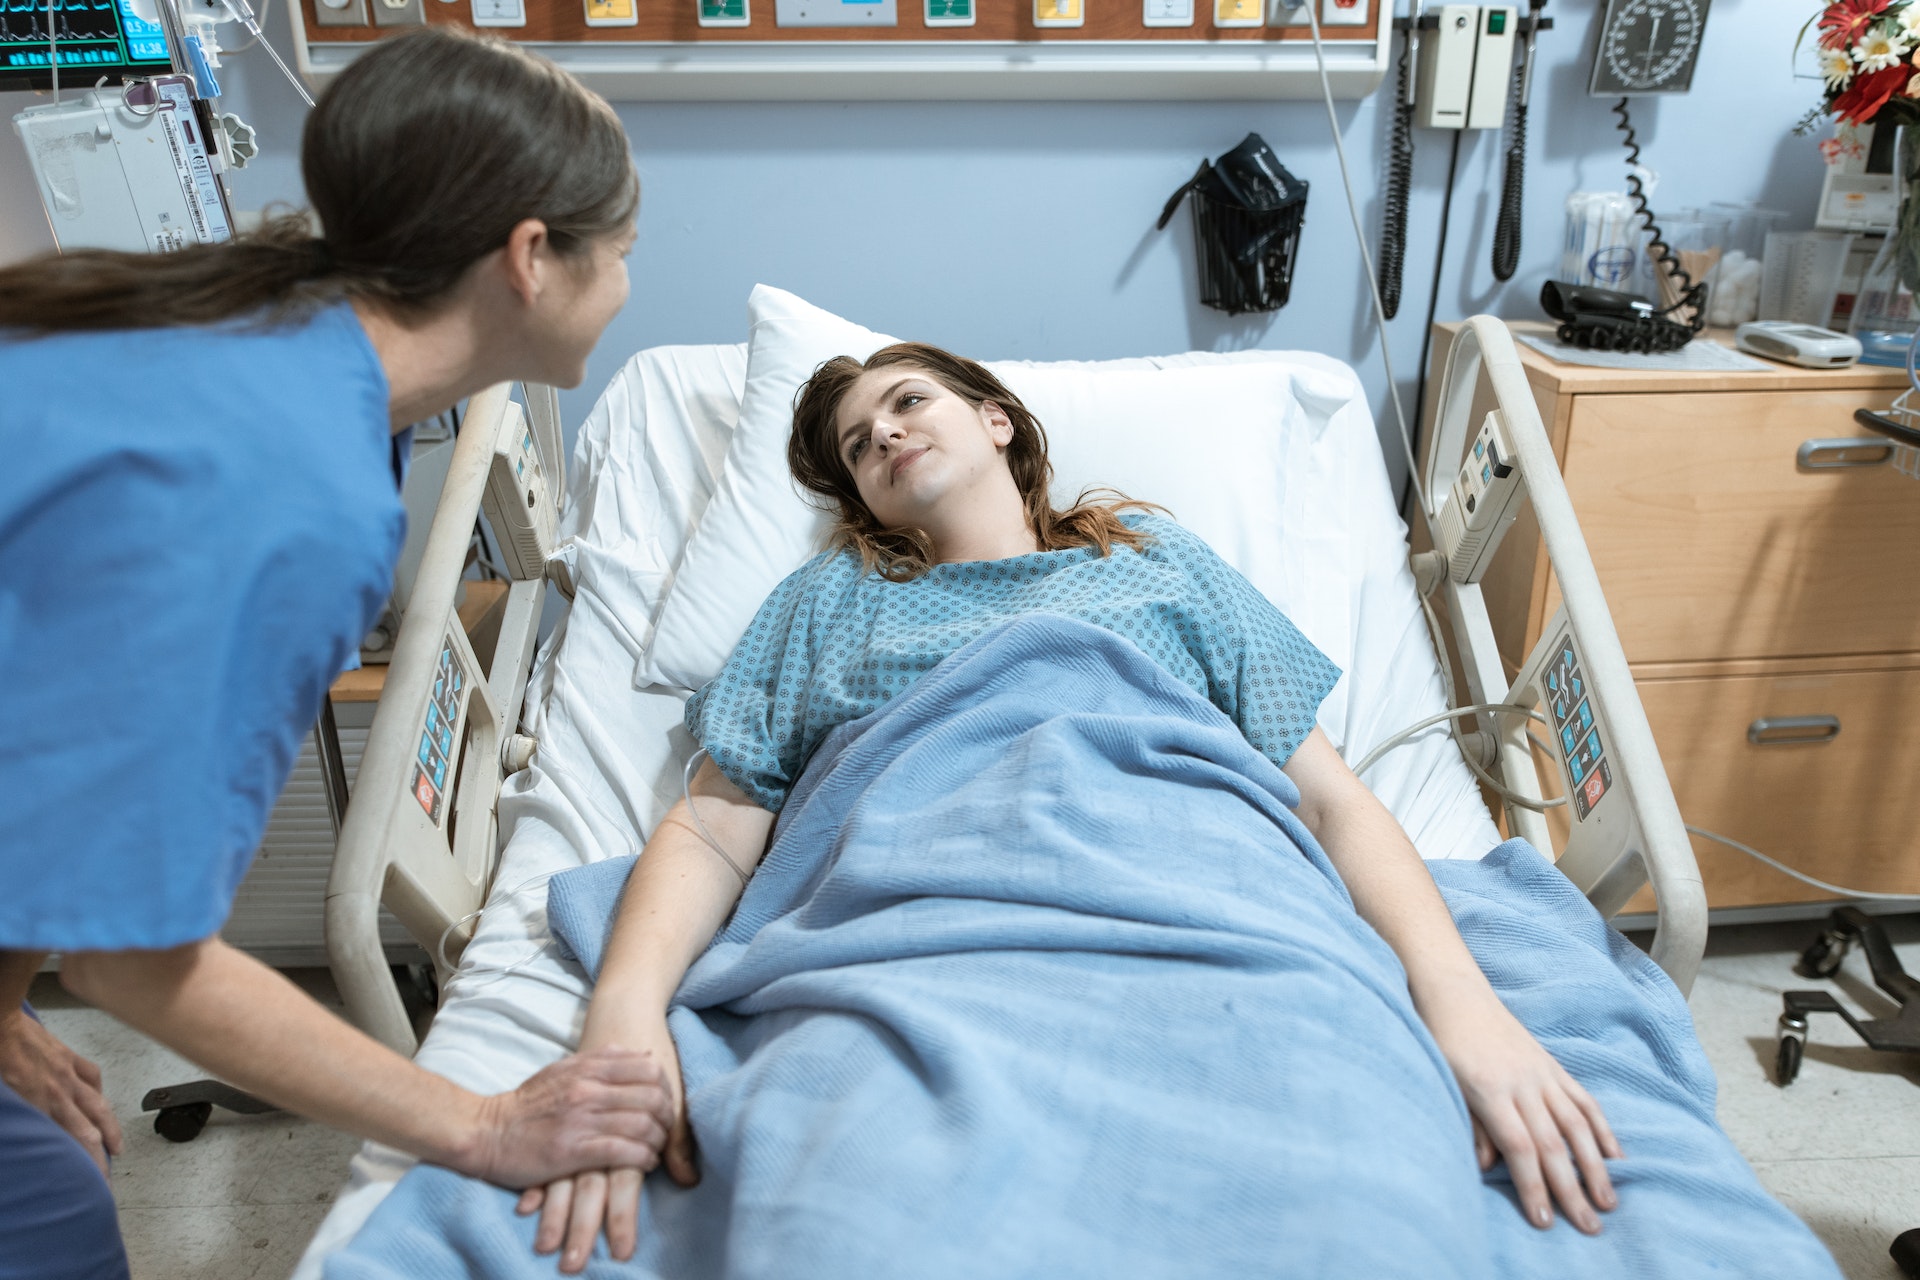 A nurse talking to a patient | Source: Pexels